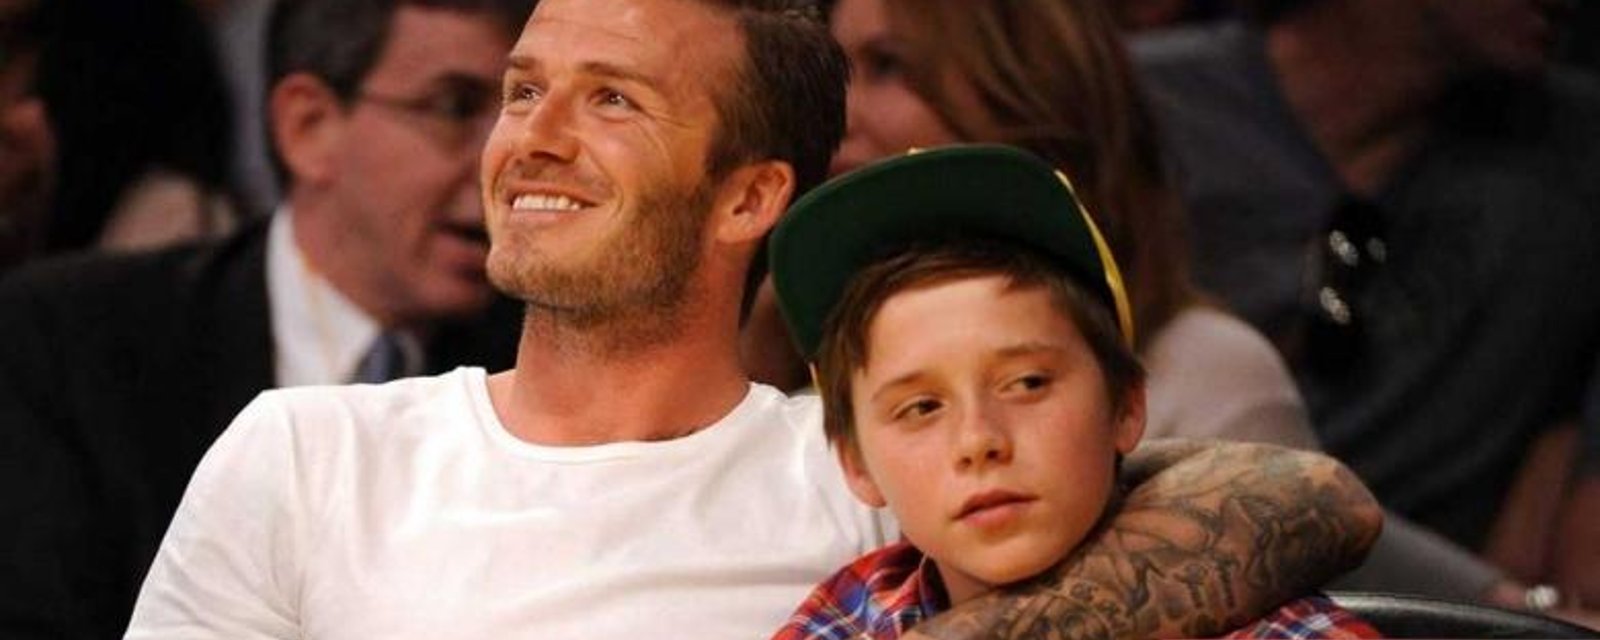 Le fils de David Beckham est maintenant un homme... Il est sexy comme tout!